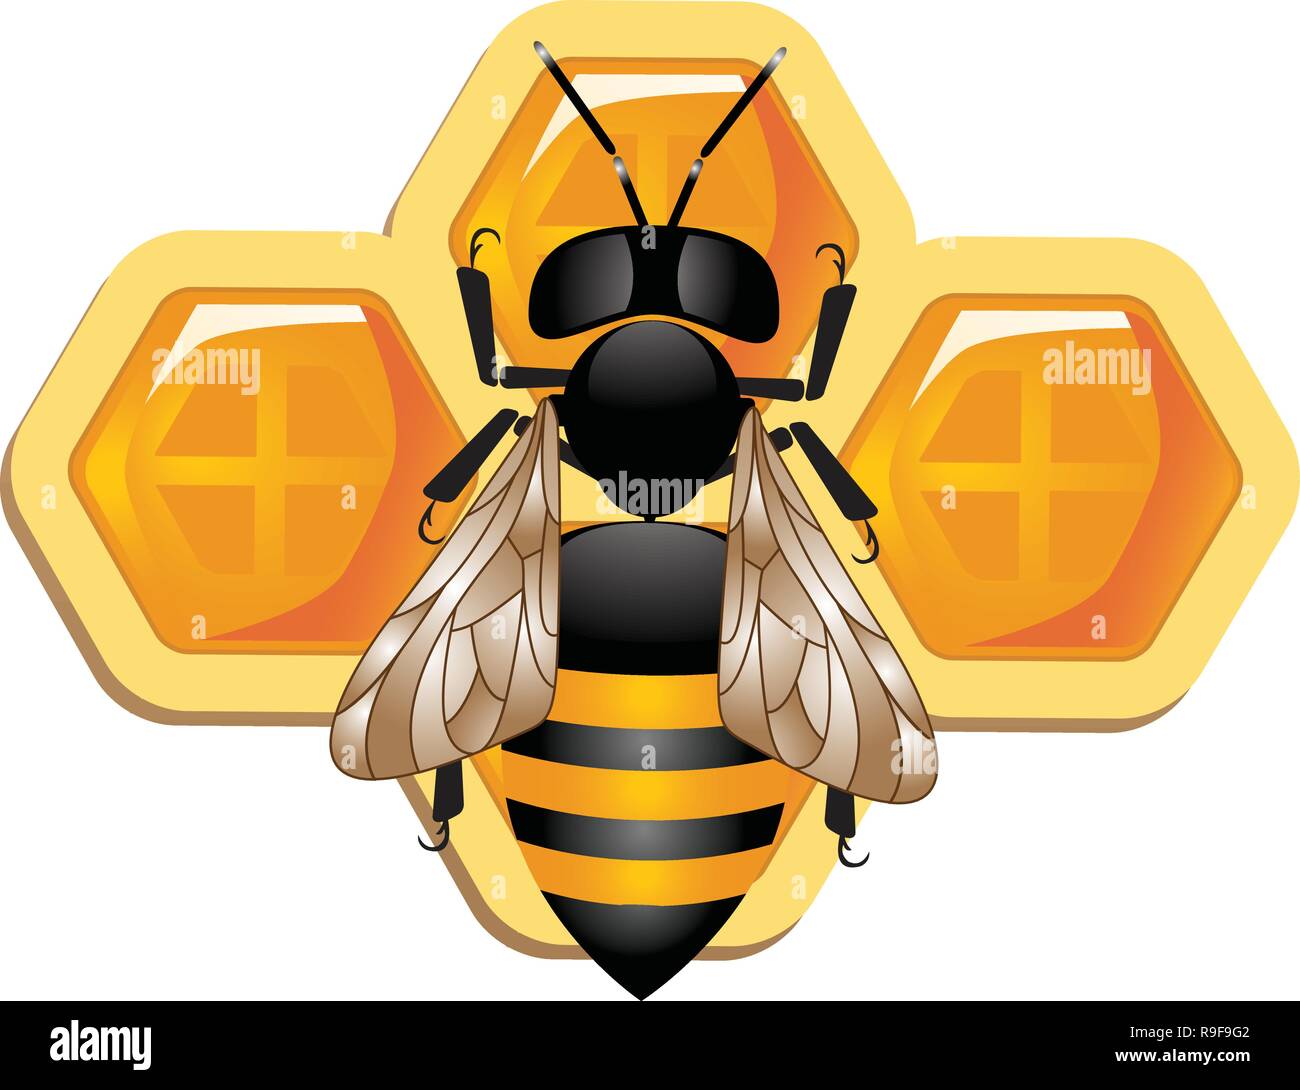 Wachs Zellen mit süßen Honig, Vektor-Wabe isoliert auf weißem bavkground, Bienen und Honig Vektor, die Bienen auf Wabe, Bumble Bee Honig Clip Stock Vektor